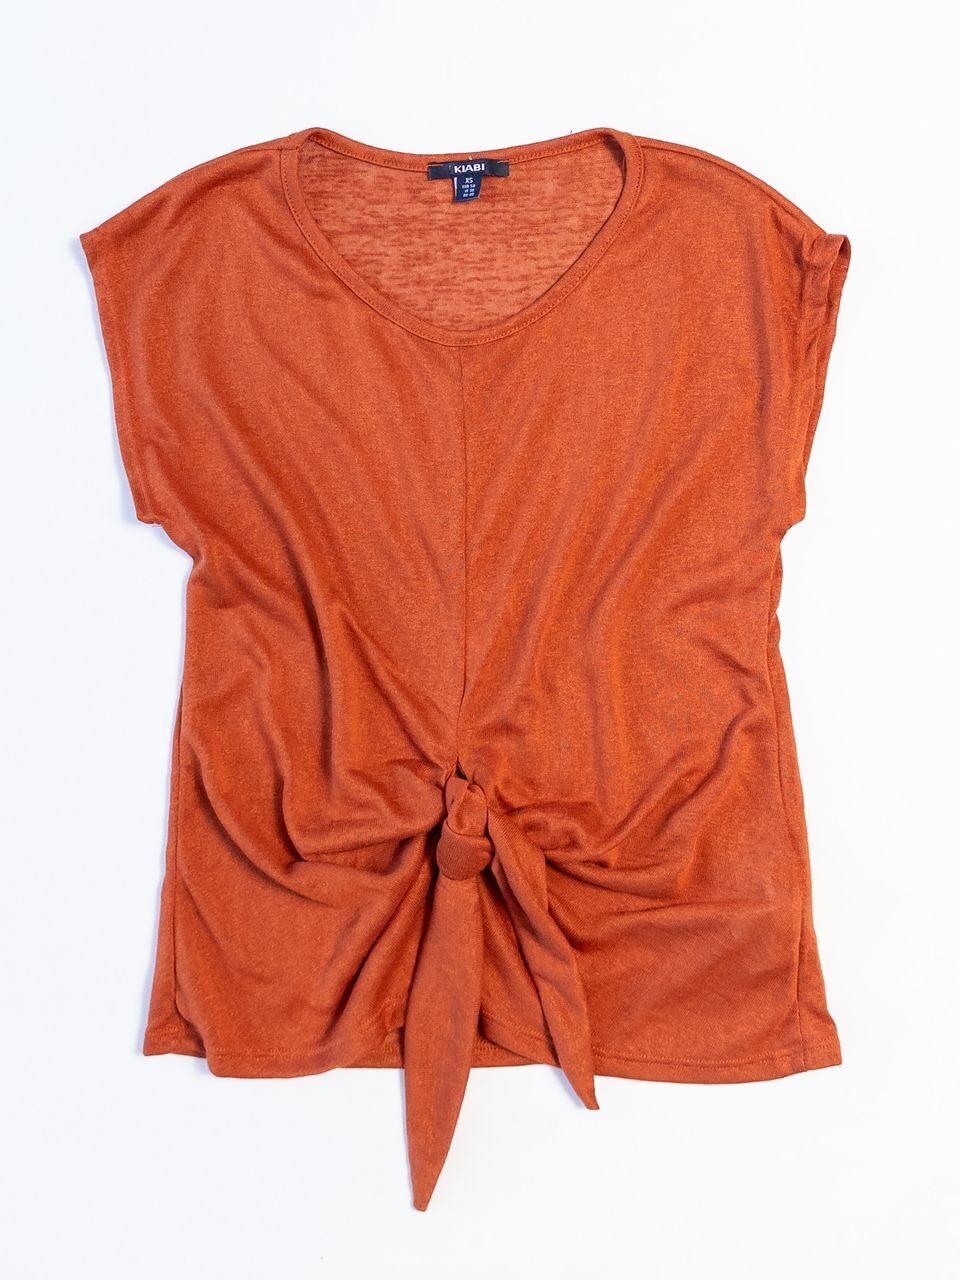 Блуза трикотажная с декоративным узлом цвет терракотовый размер EUR 34 (rus 40) KIABI